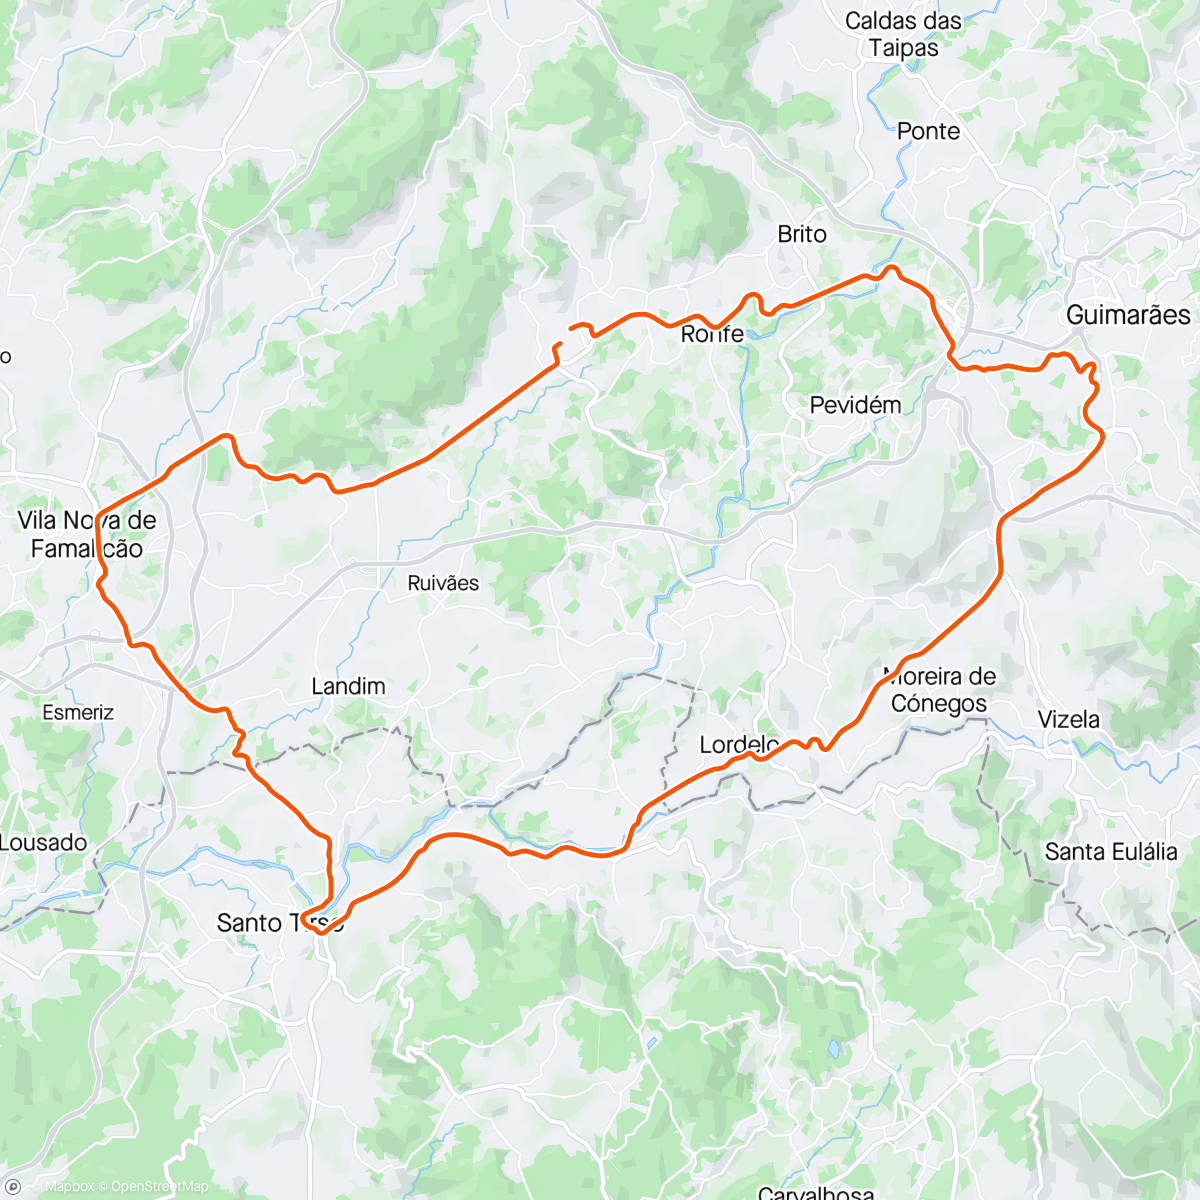 「Volta de bicicleta vespertina」活動的地圖